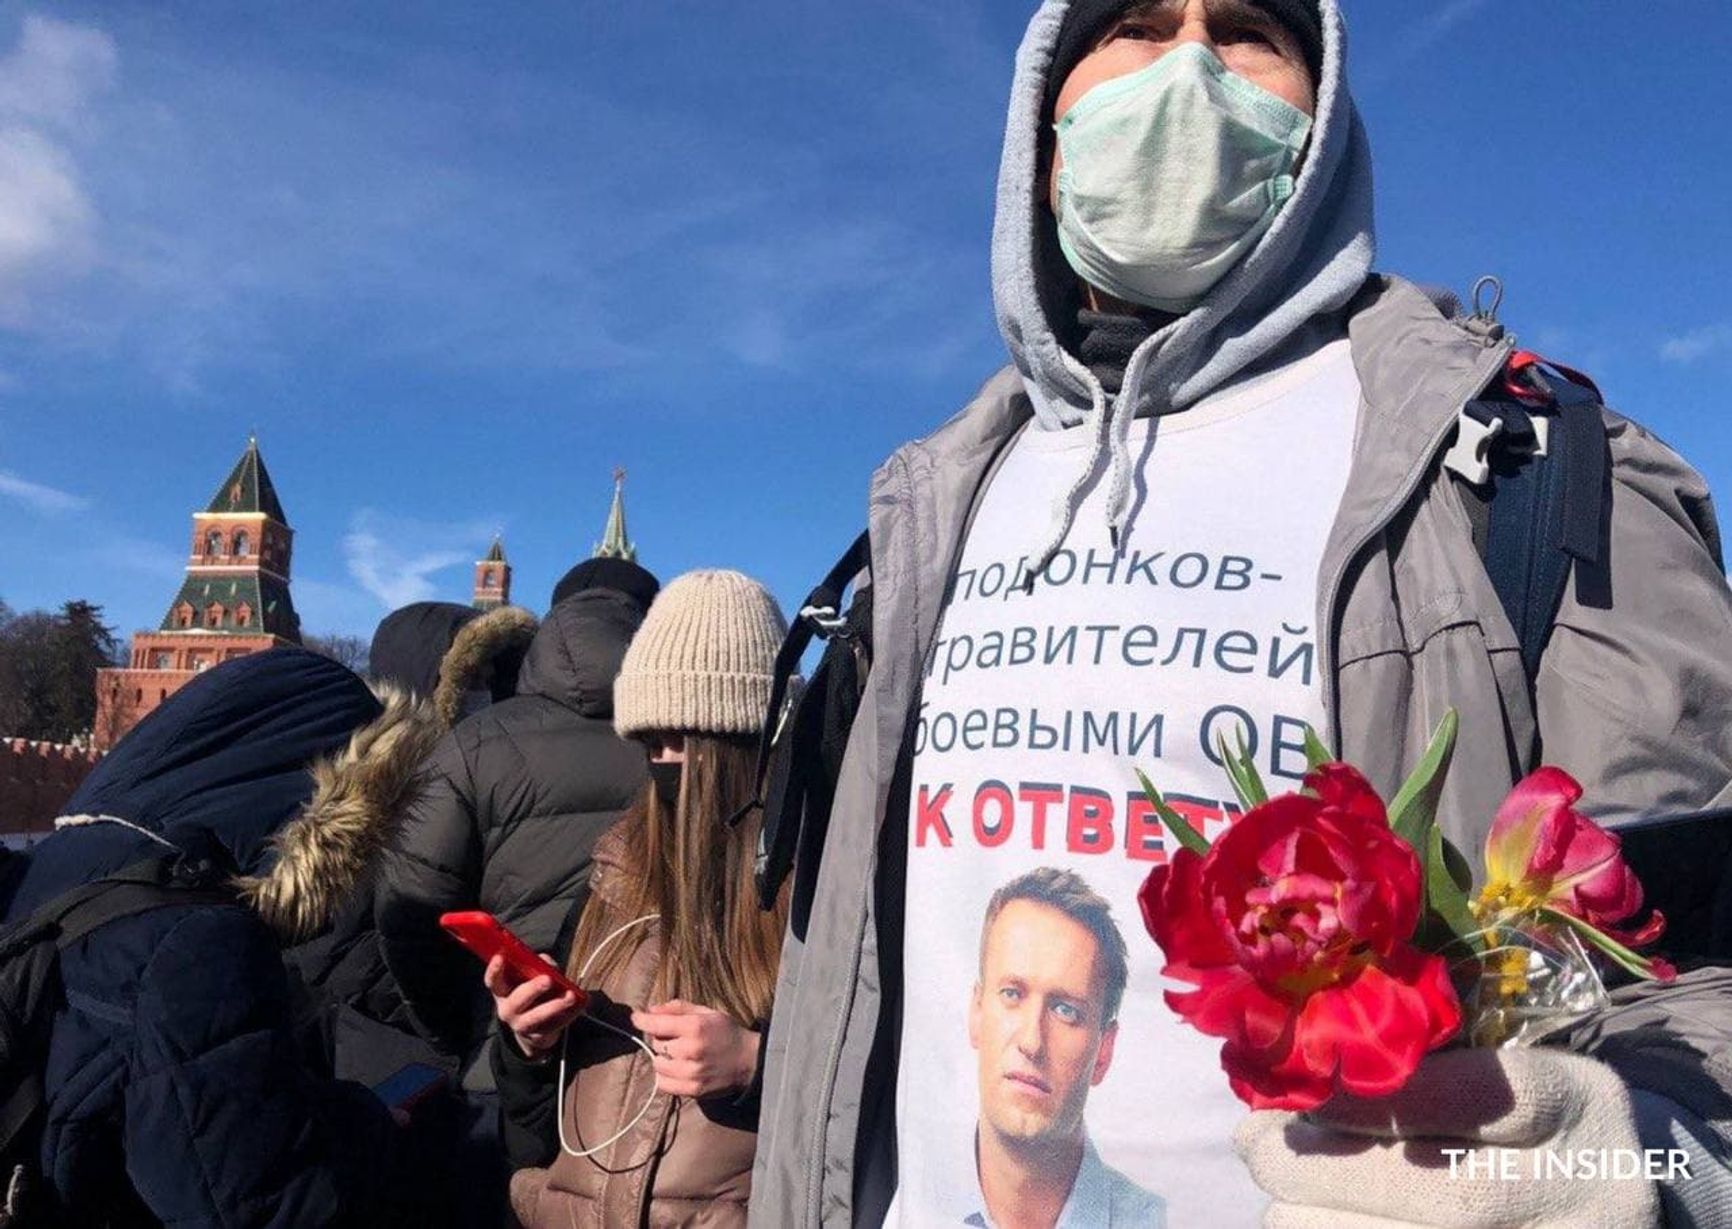 В Москве полиция не вмешивалась в акцию (тем временем, в Казани полиция задержала двух человек на акции памяти Немцова)